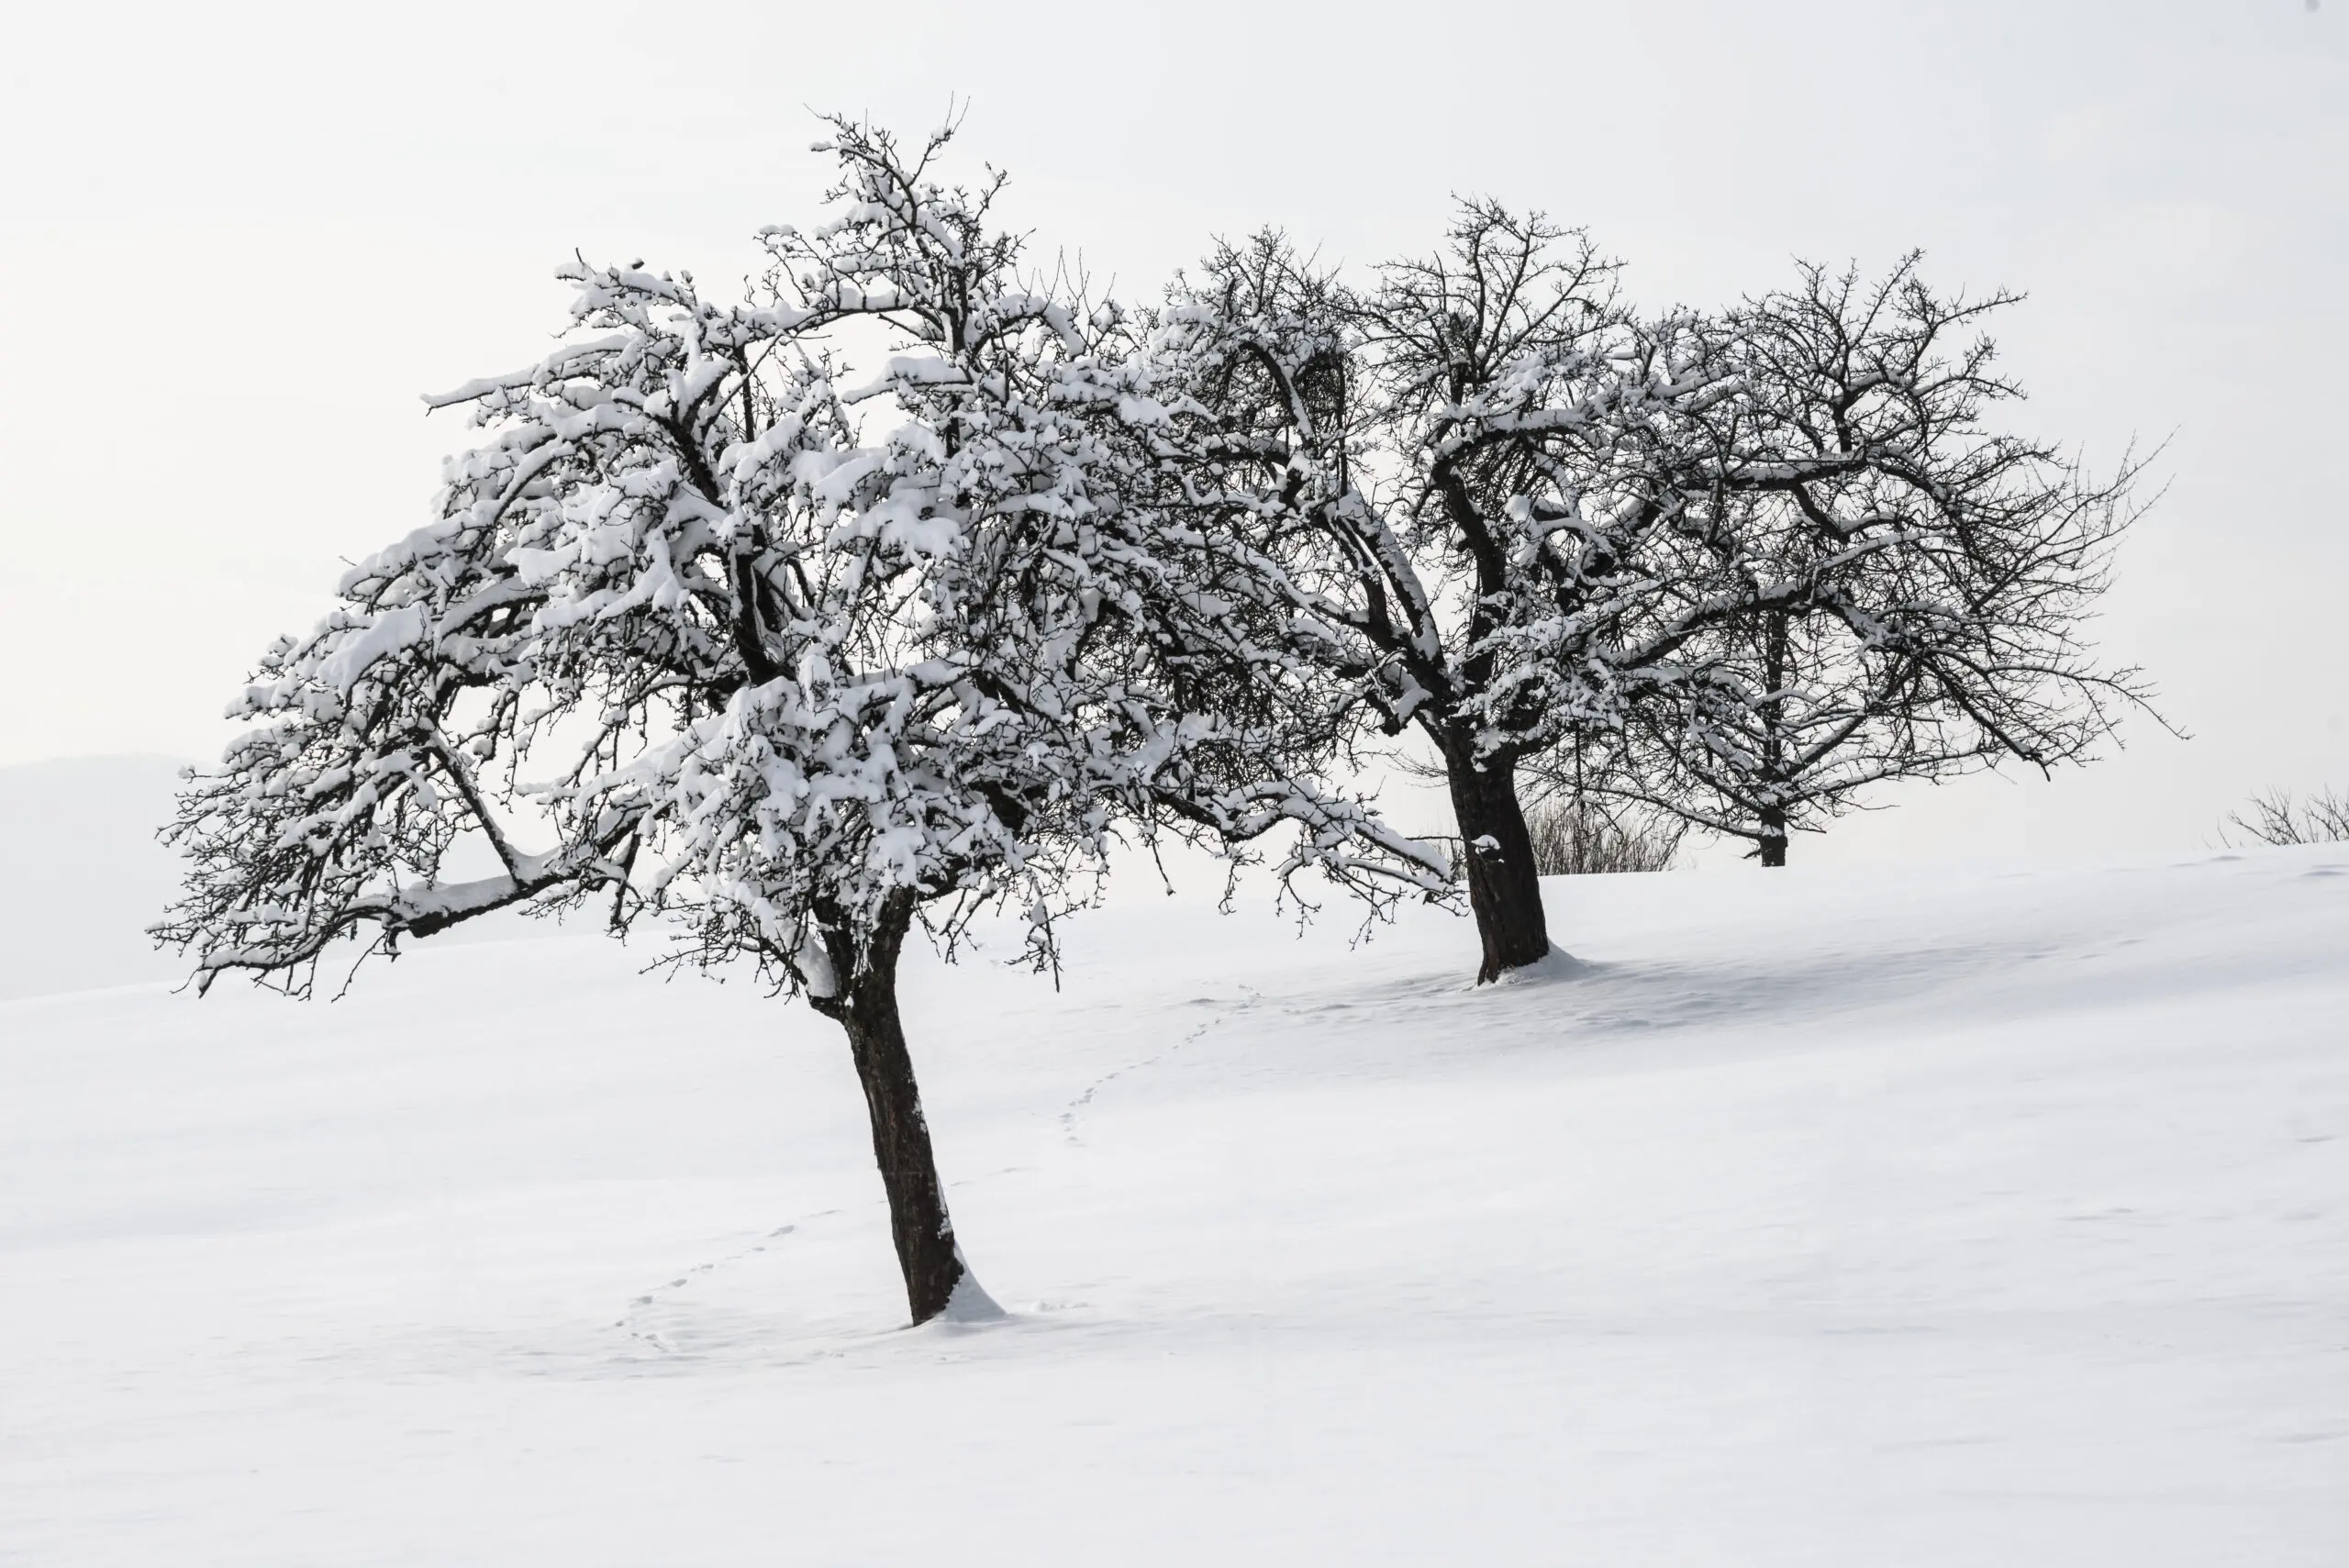 Wandbild (533) weißer Baum präsentiert: Natur,Landschaften,Bäume,Schnee und Eis,Winter